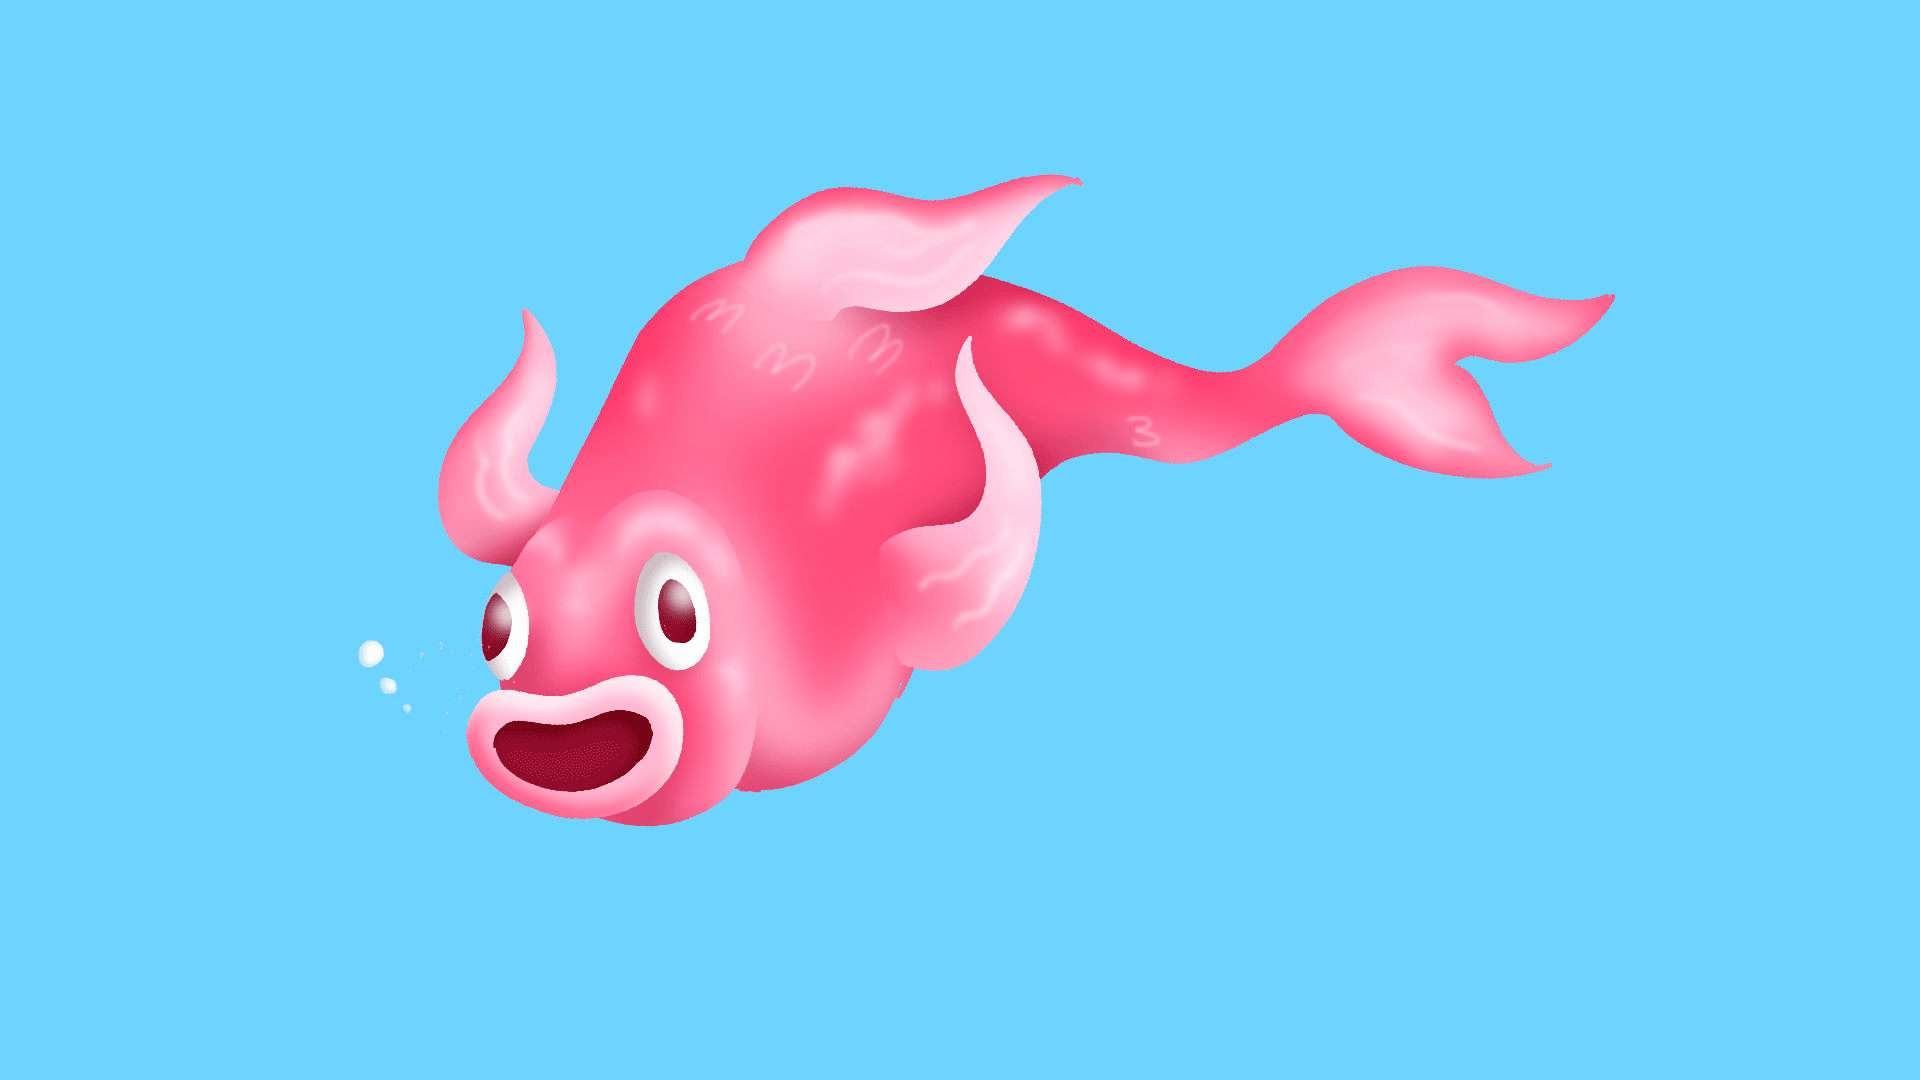 Blob Fish GIFs